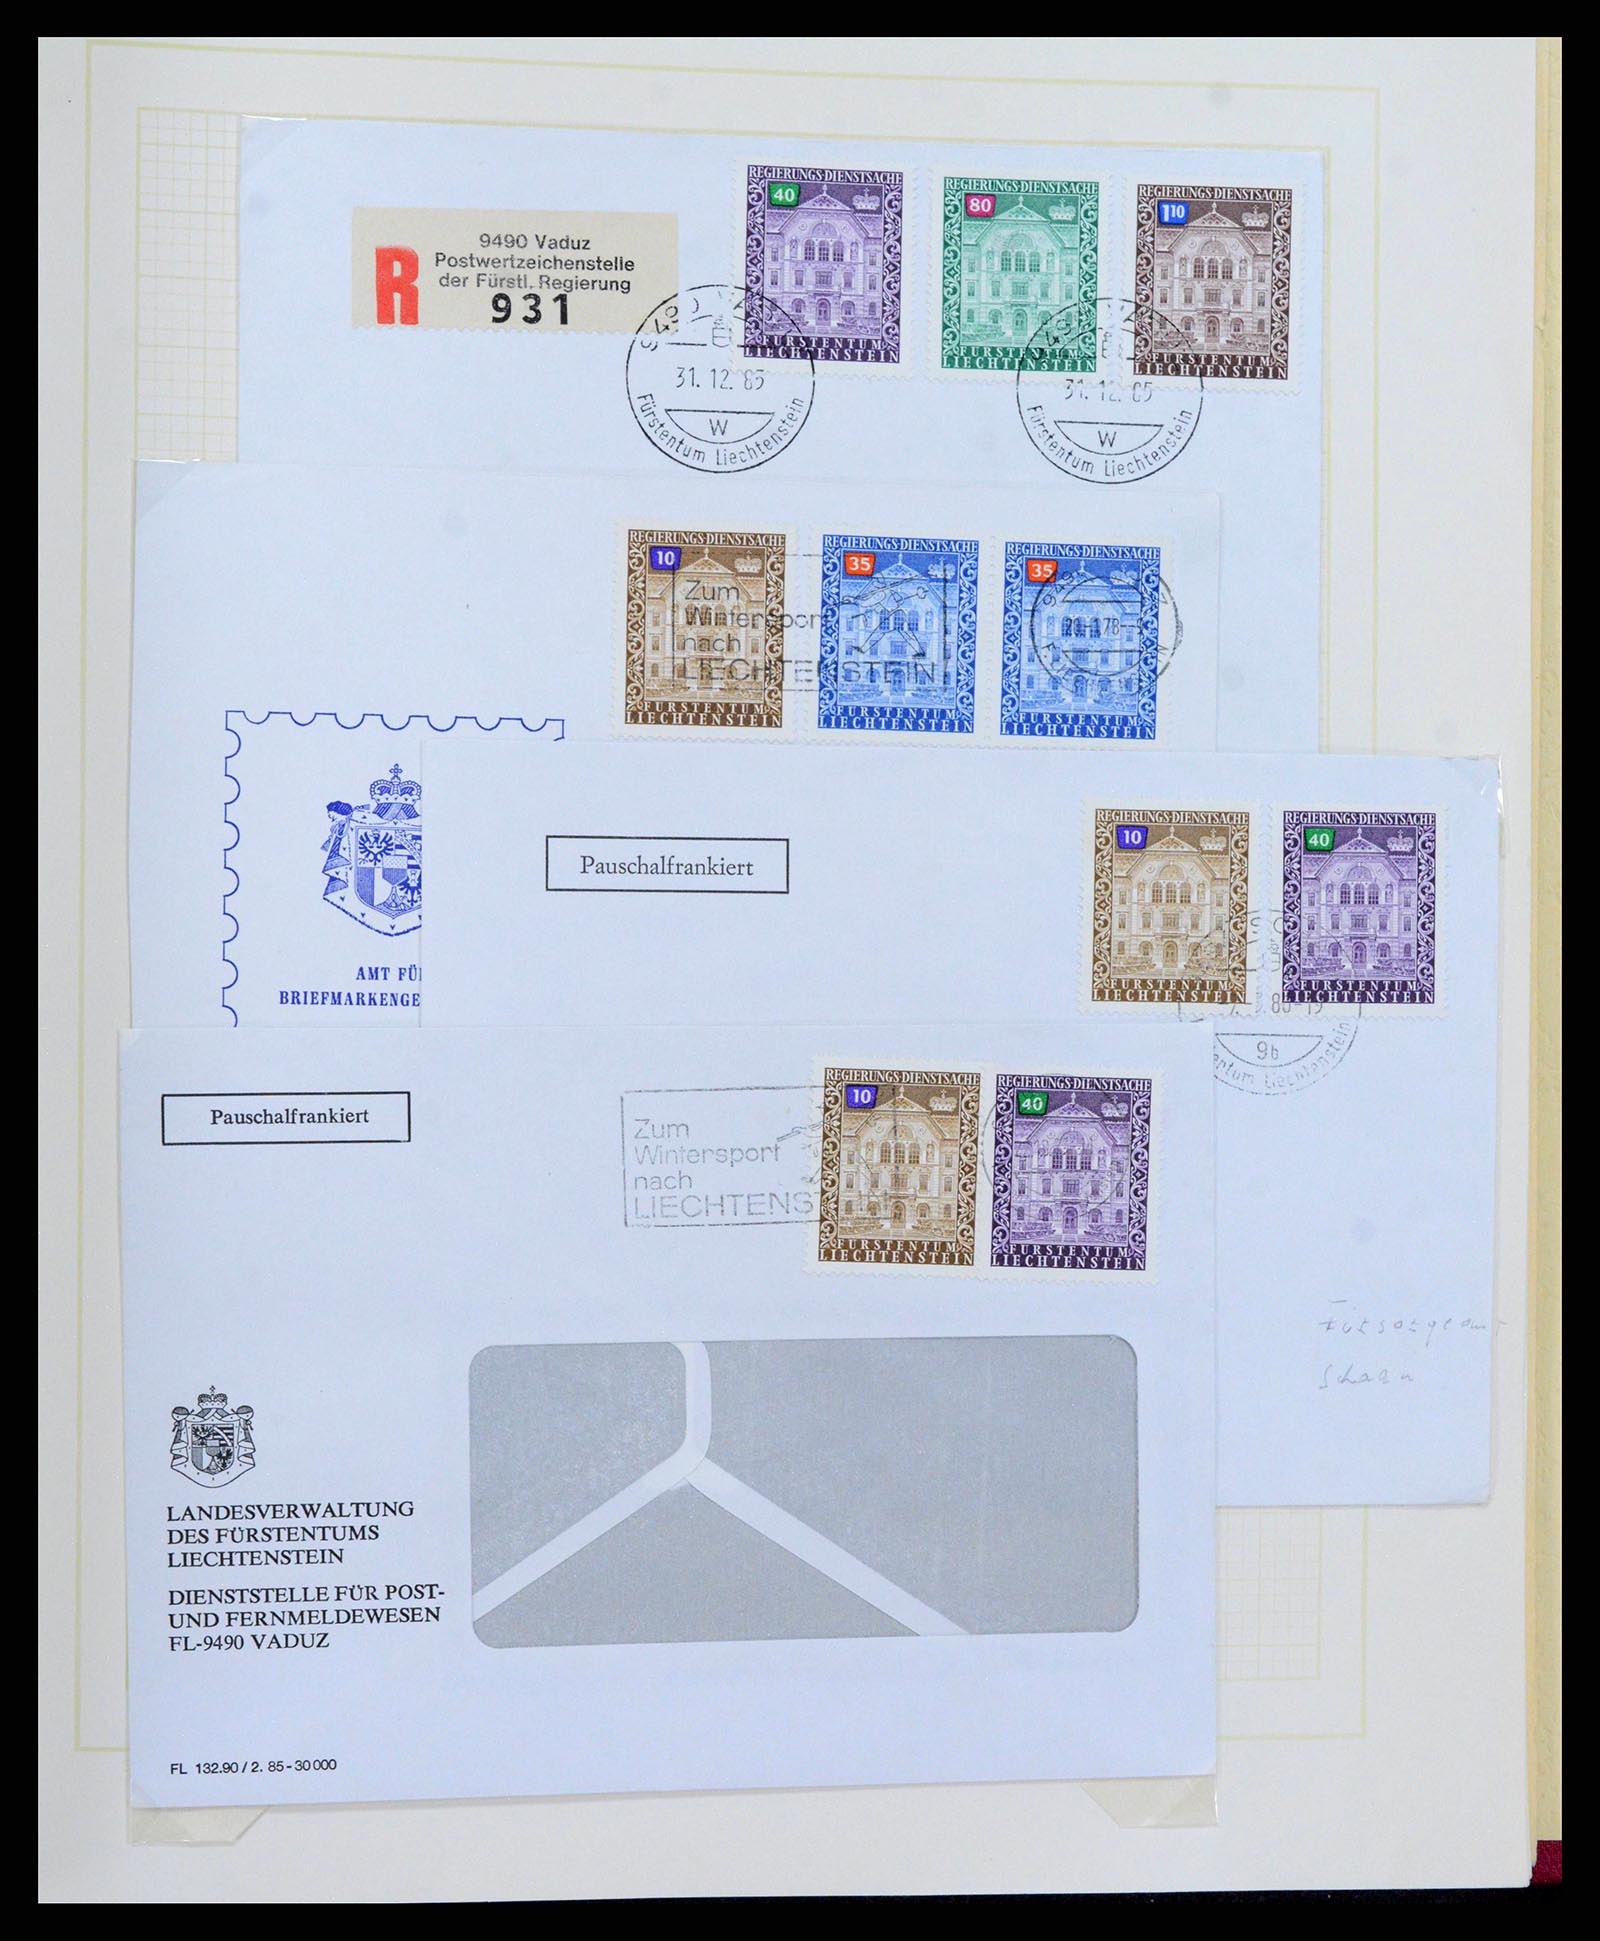 38204 0053 - Stamp collection 38204 Liechtenstein service covers 1932-1989.